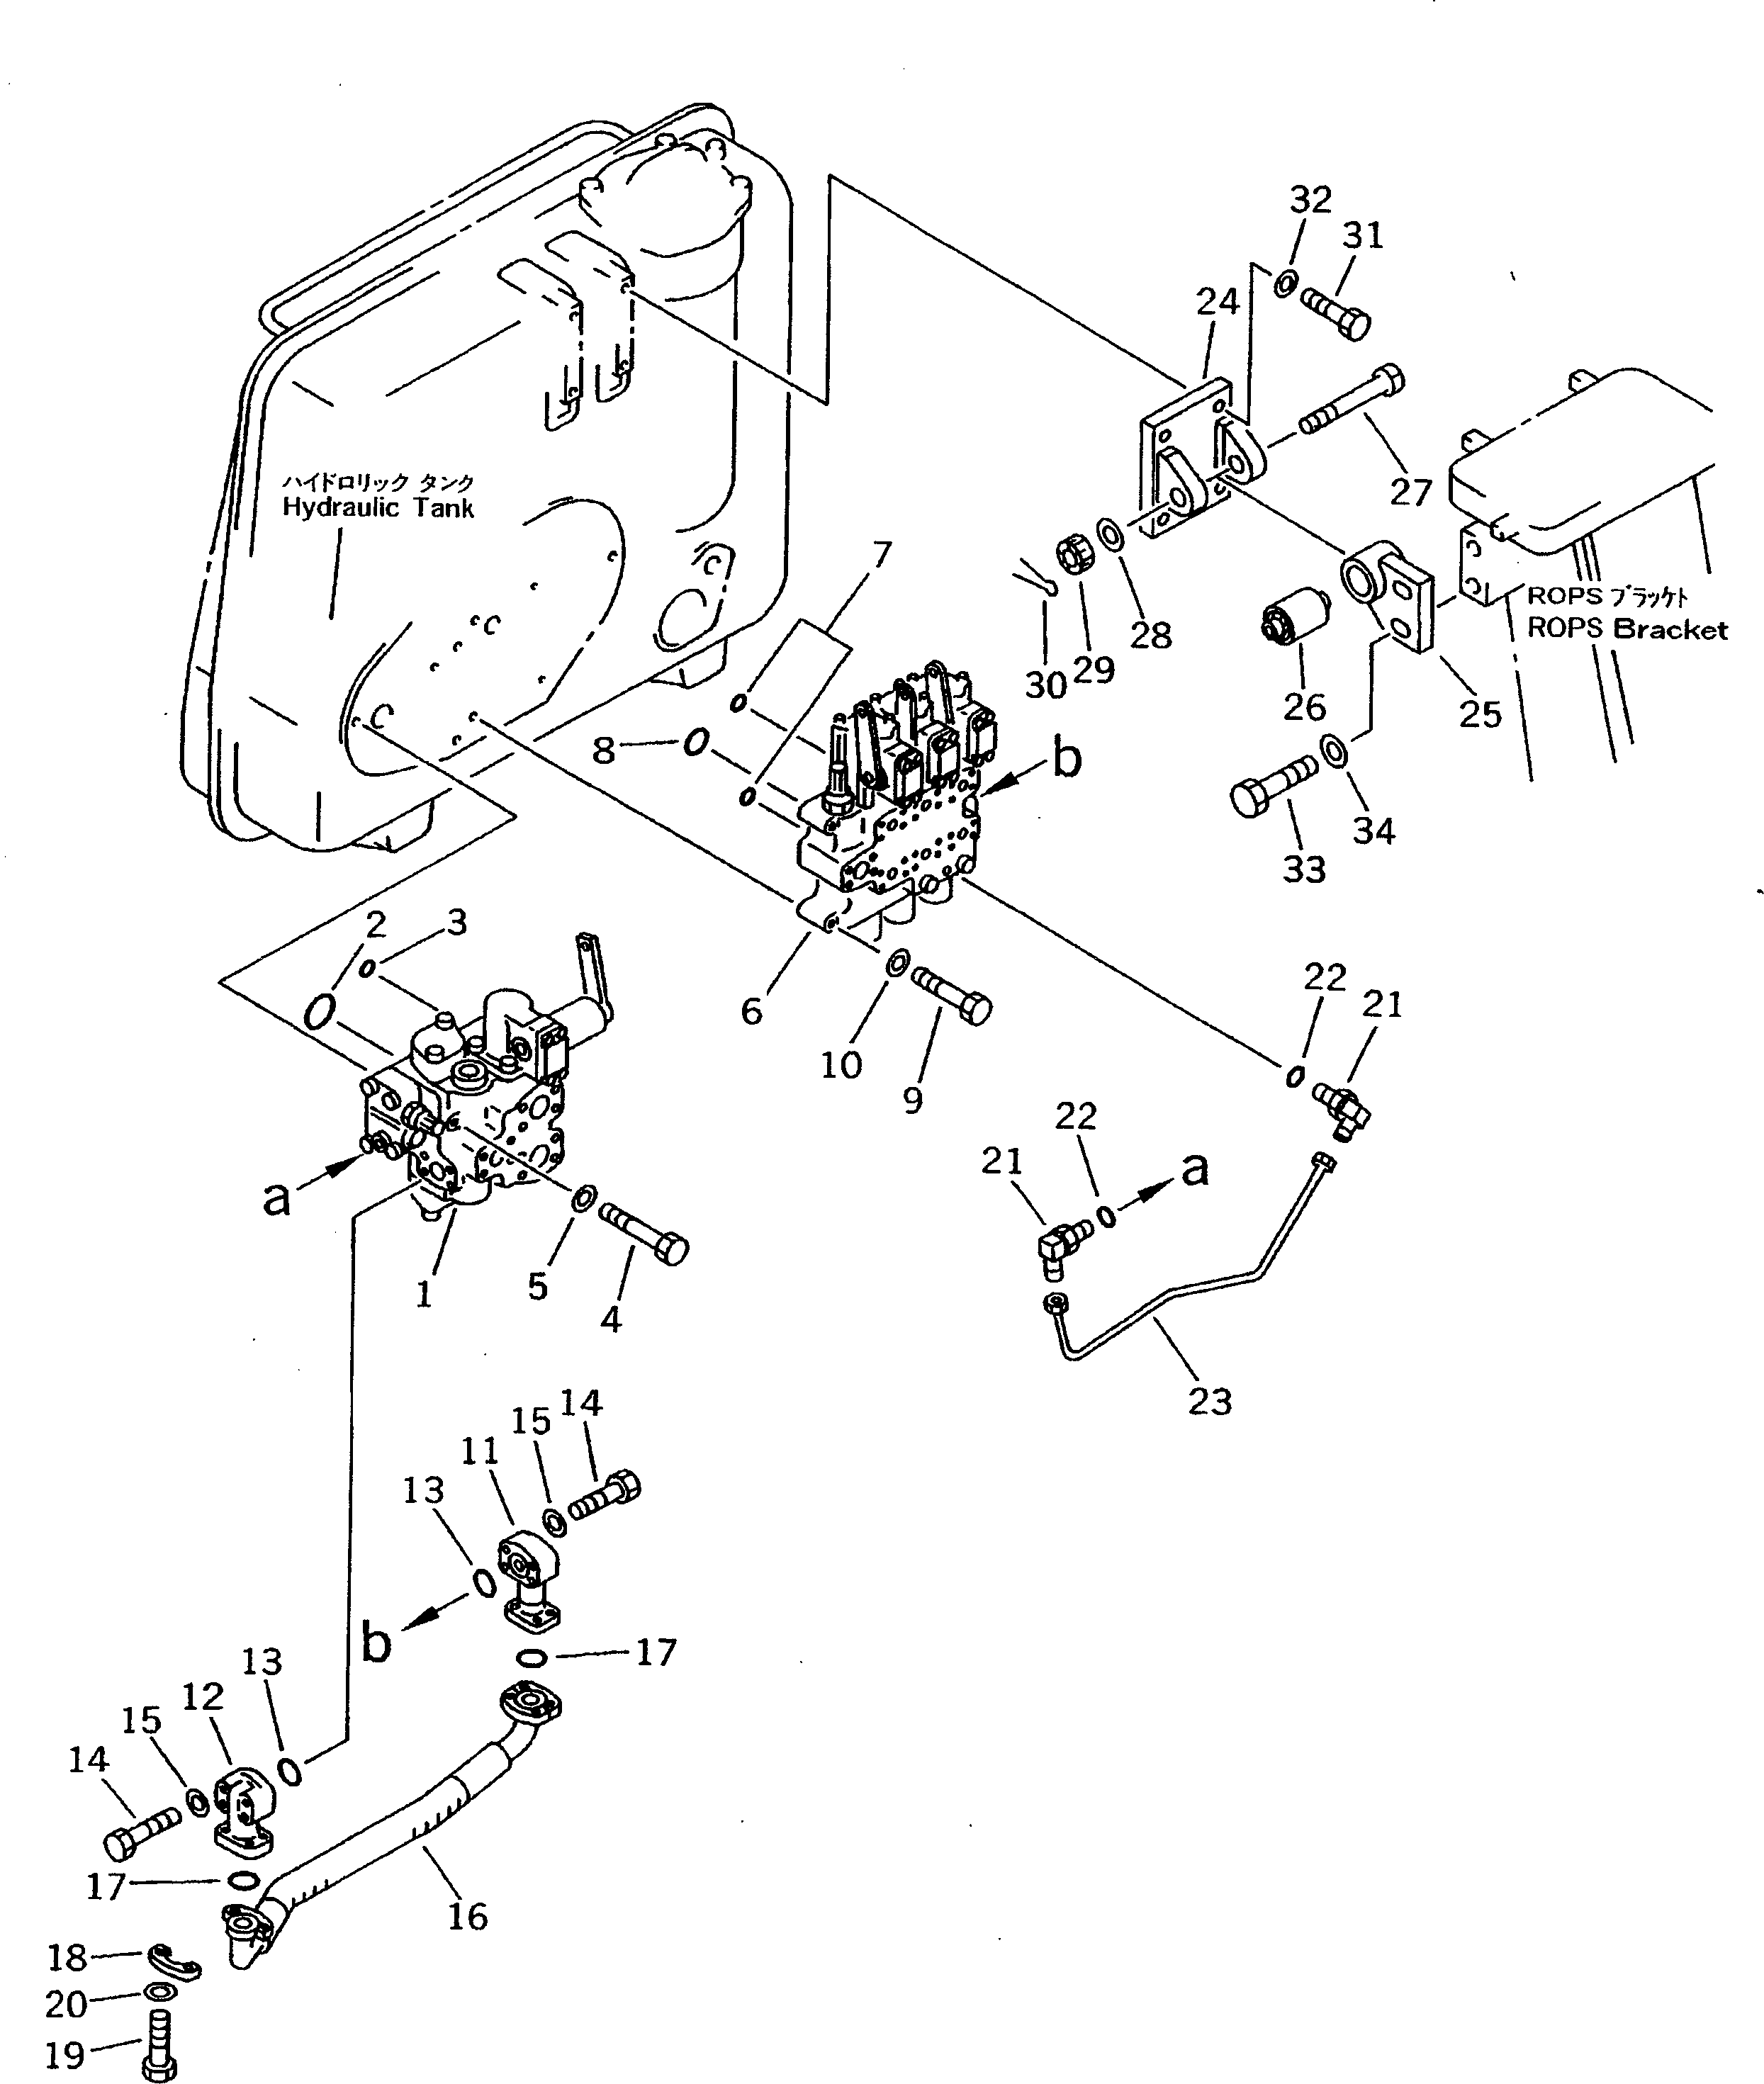 580. HYDRAULIC TANK VALVE [M2210-10A0] - Komatsu part D275A-2 S/N 10001-UP [d275a-2c]